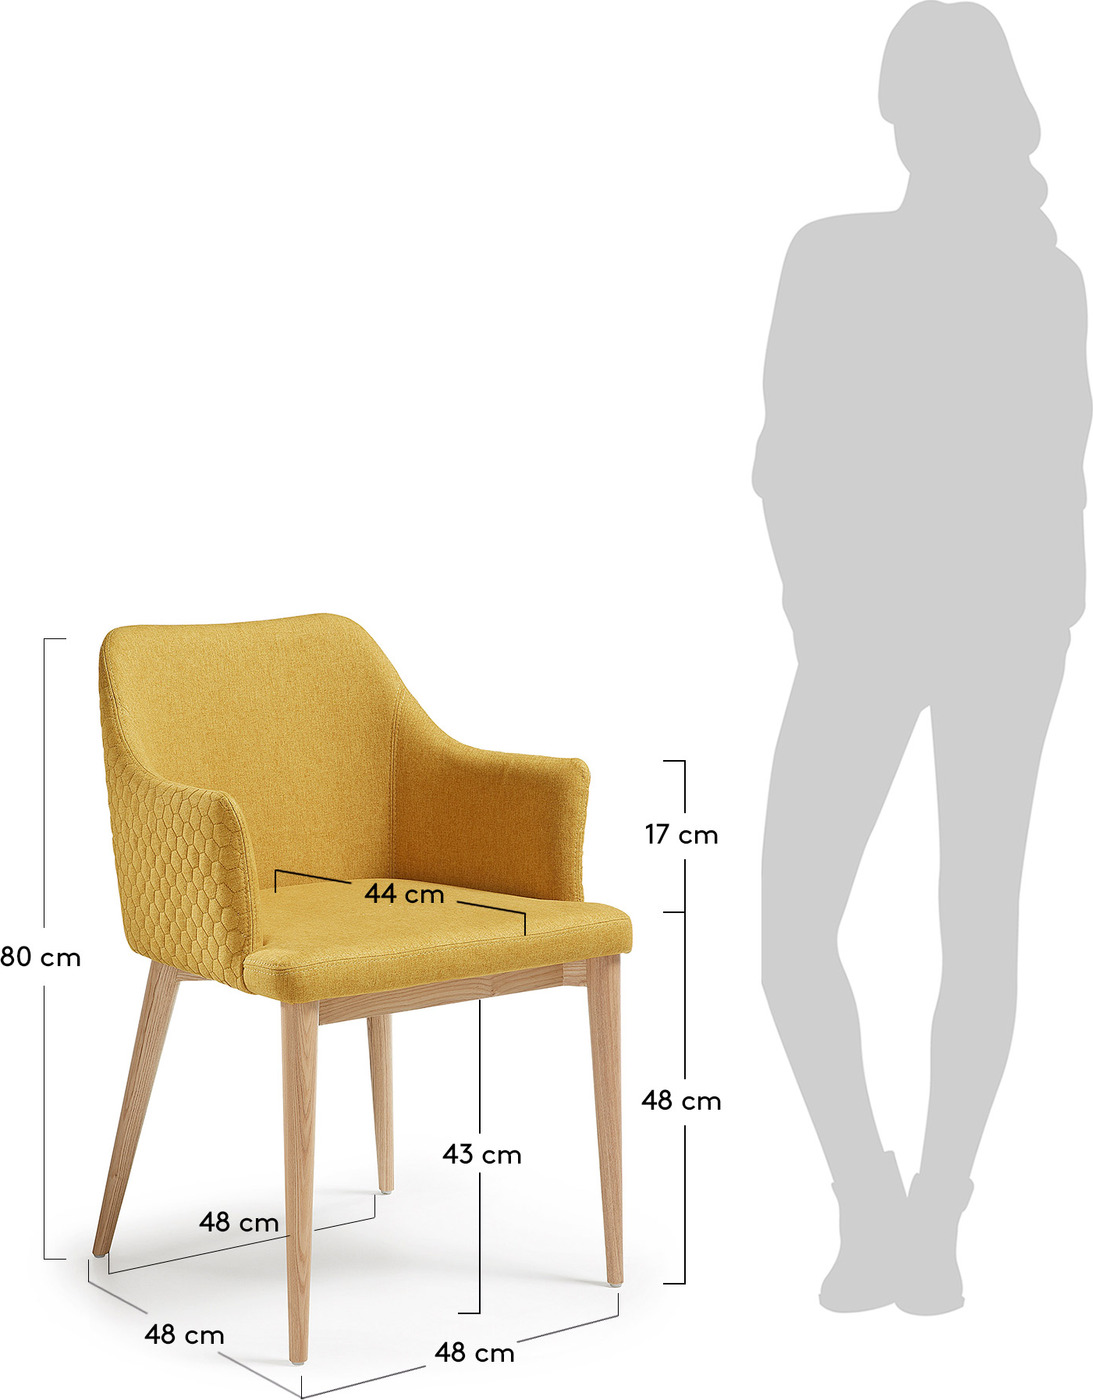 6 тип стула по бристольской шкале